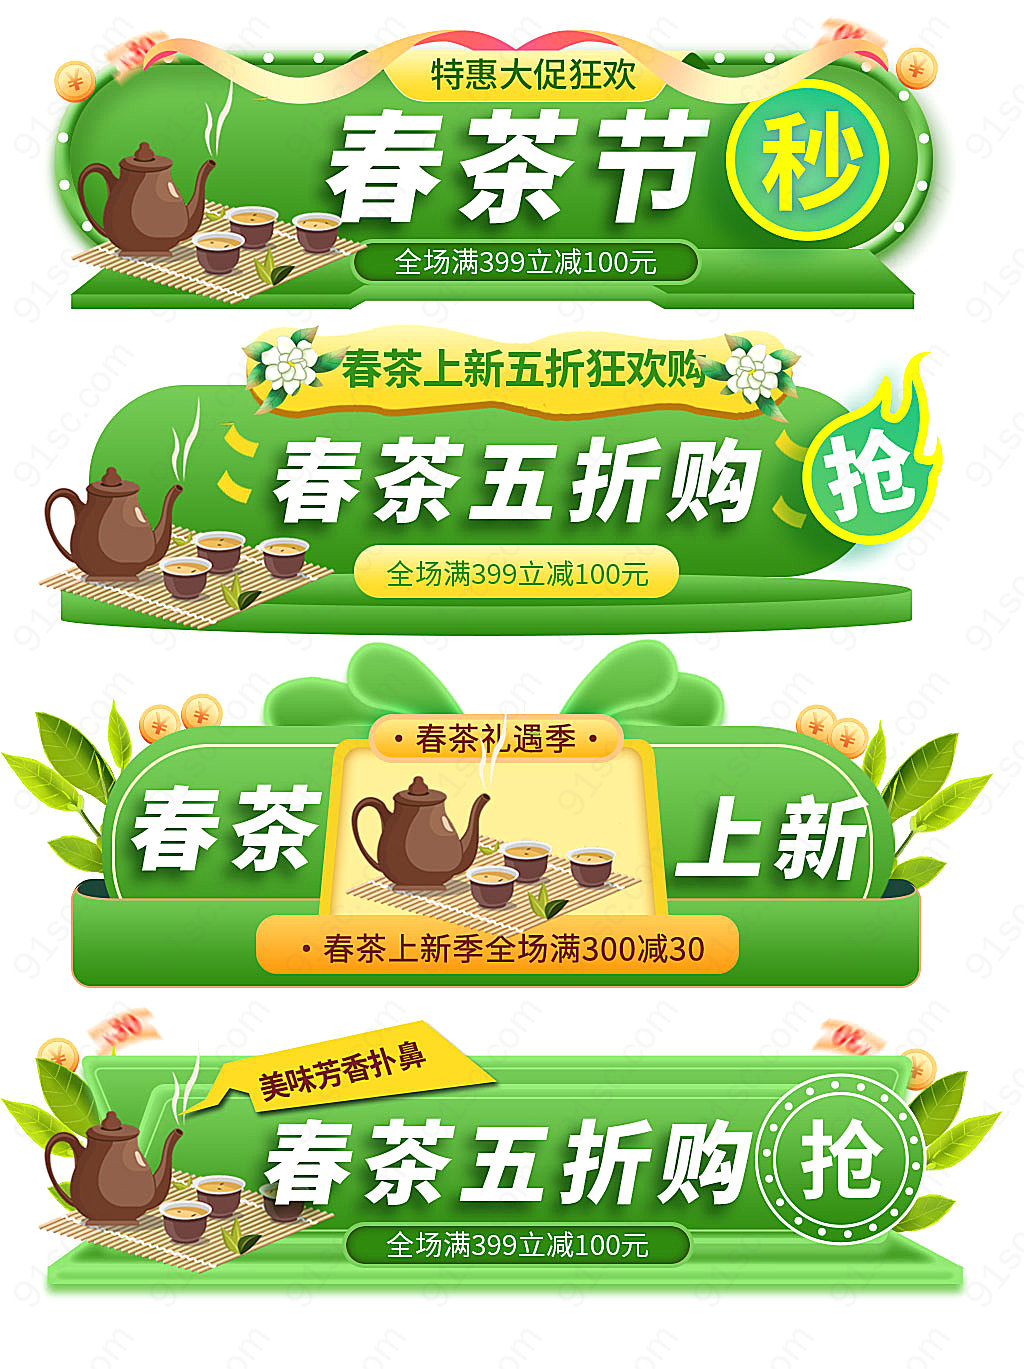 绿色茶叶电商淘宝产品宣传图设计新媒体用图下载